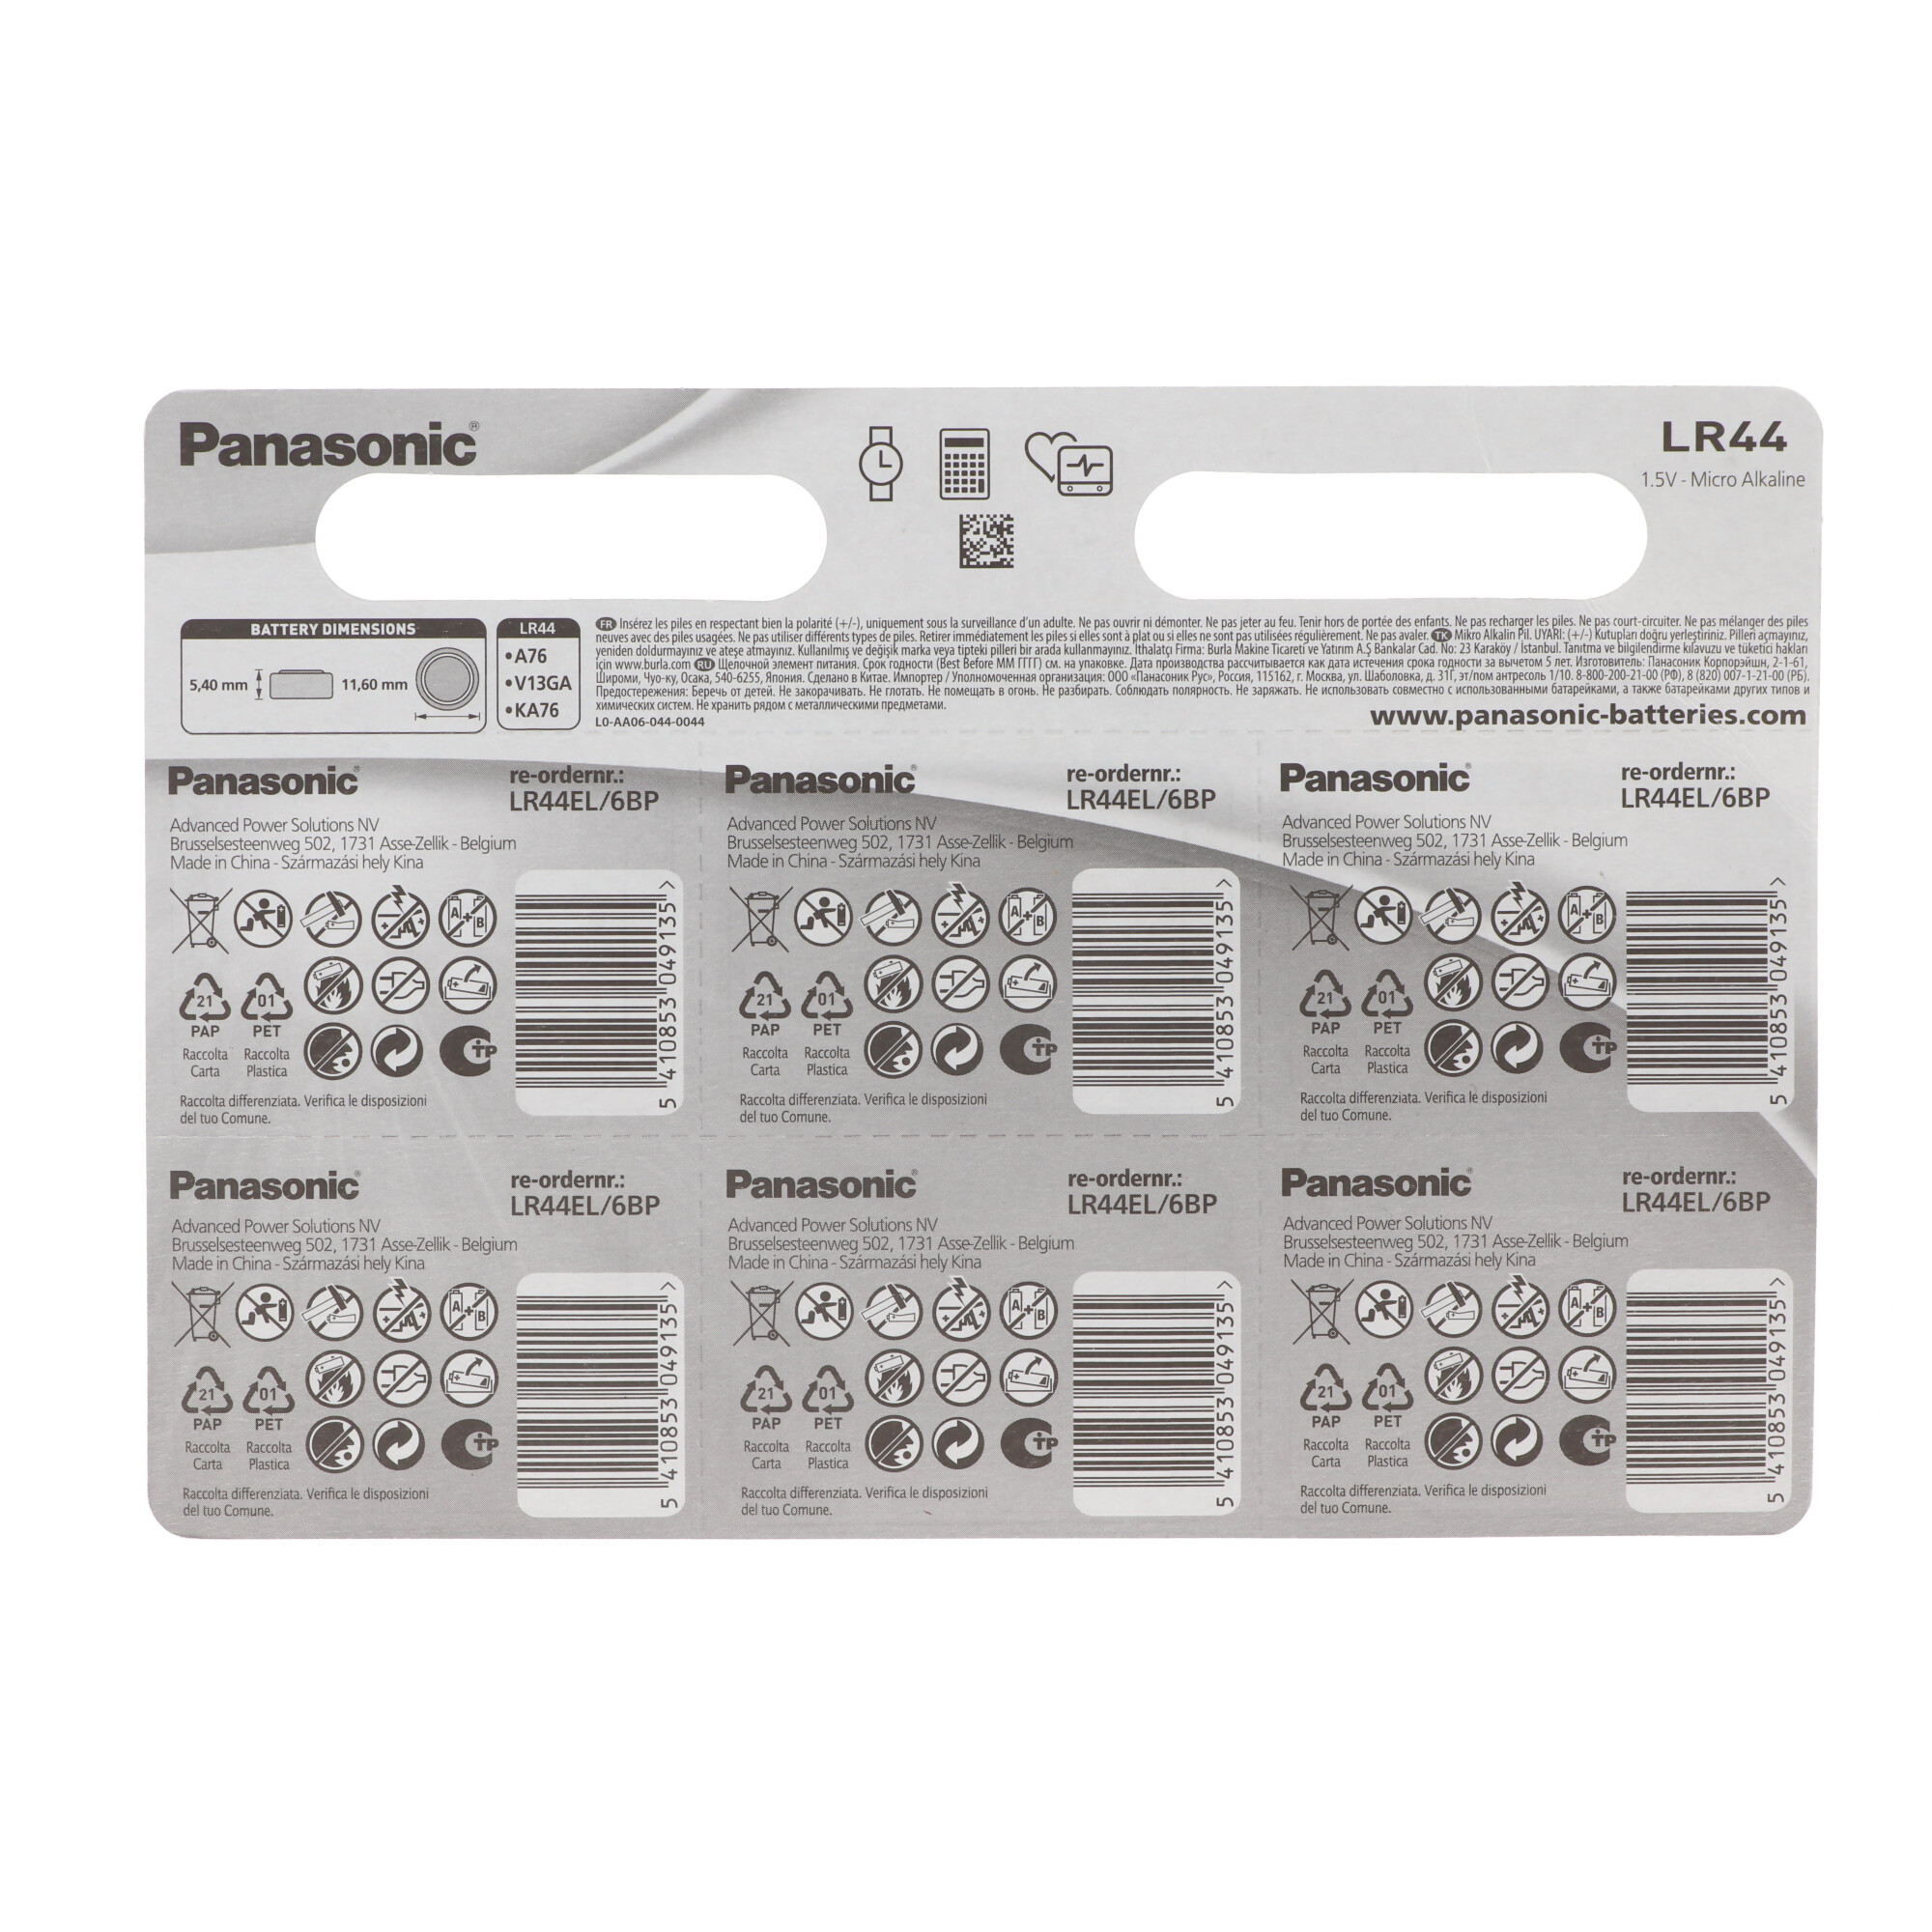 Panasonic Batterie Alkaline, Knopfzelle, LR44, V13GA, 1.5V Electronics, Retail Blister (6-Pack)